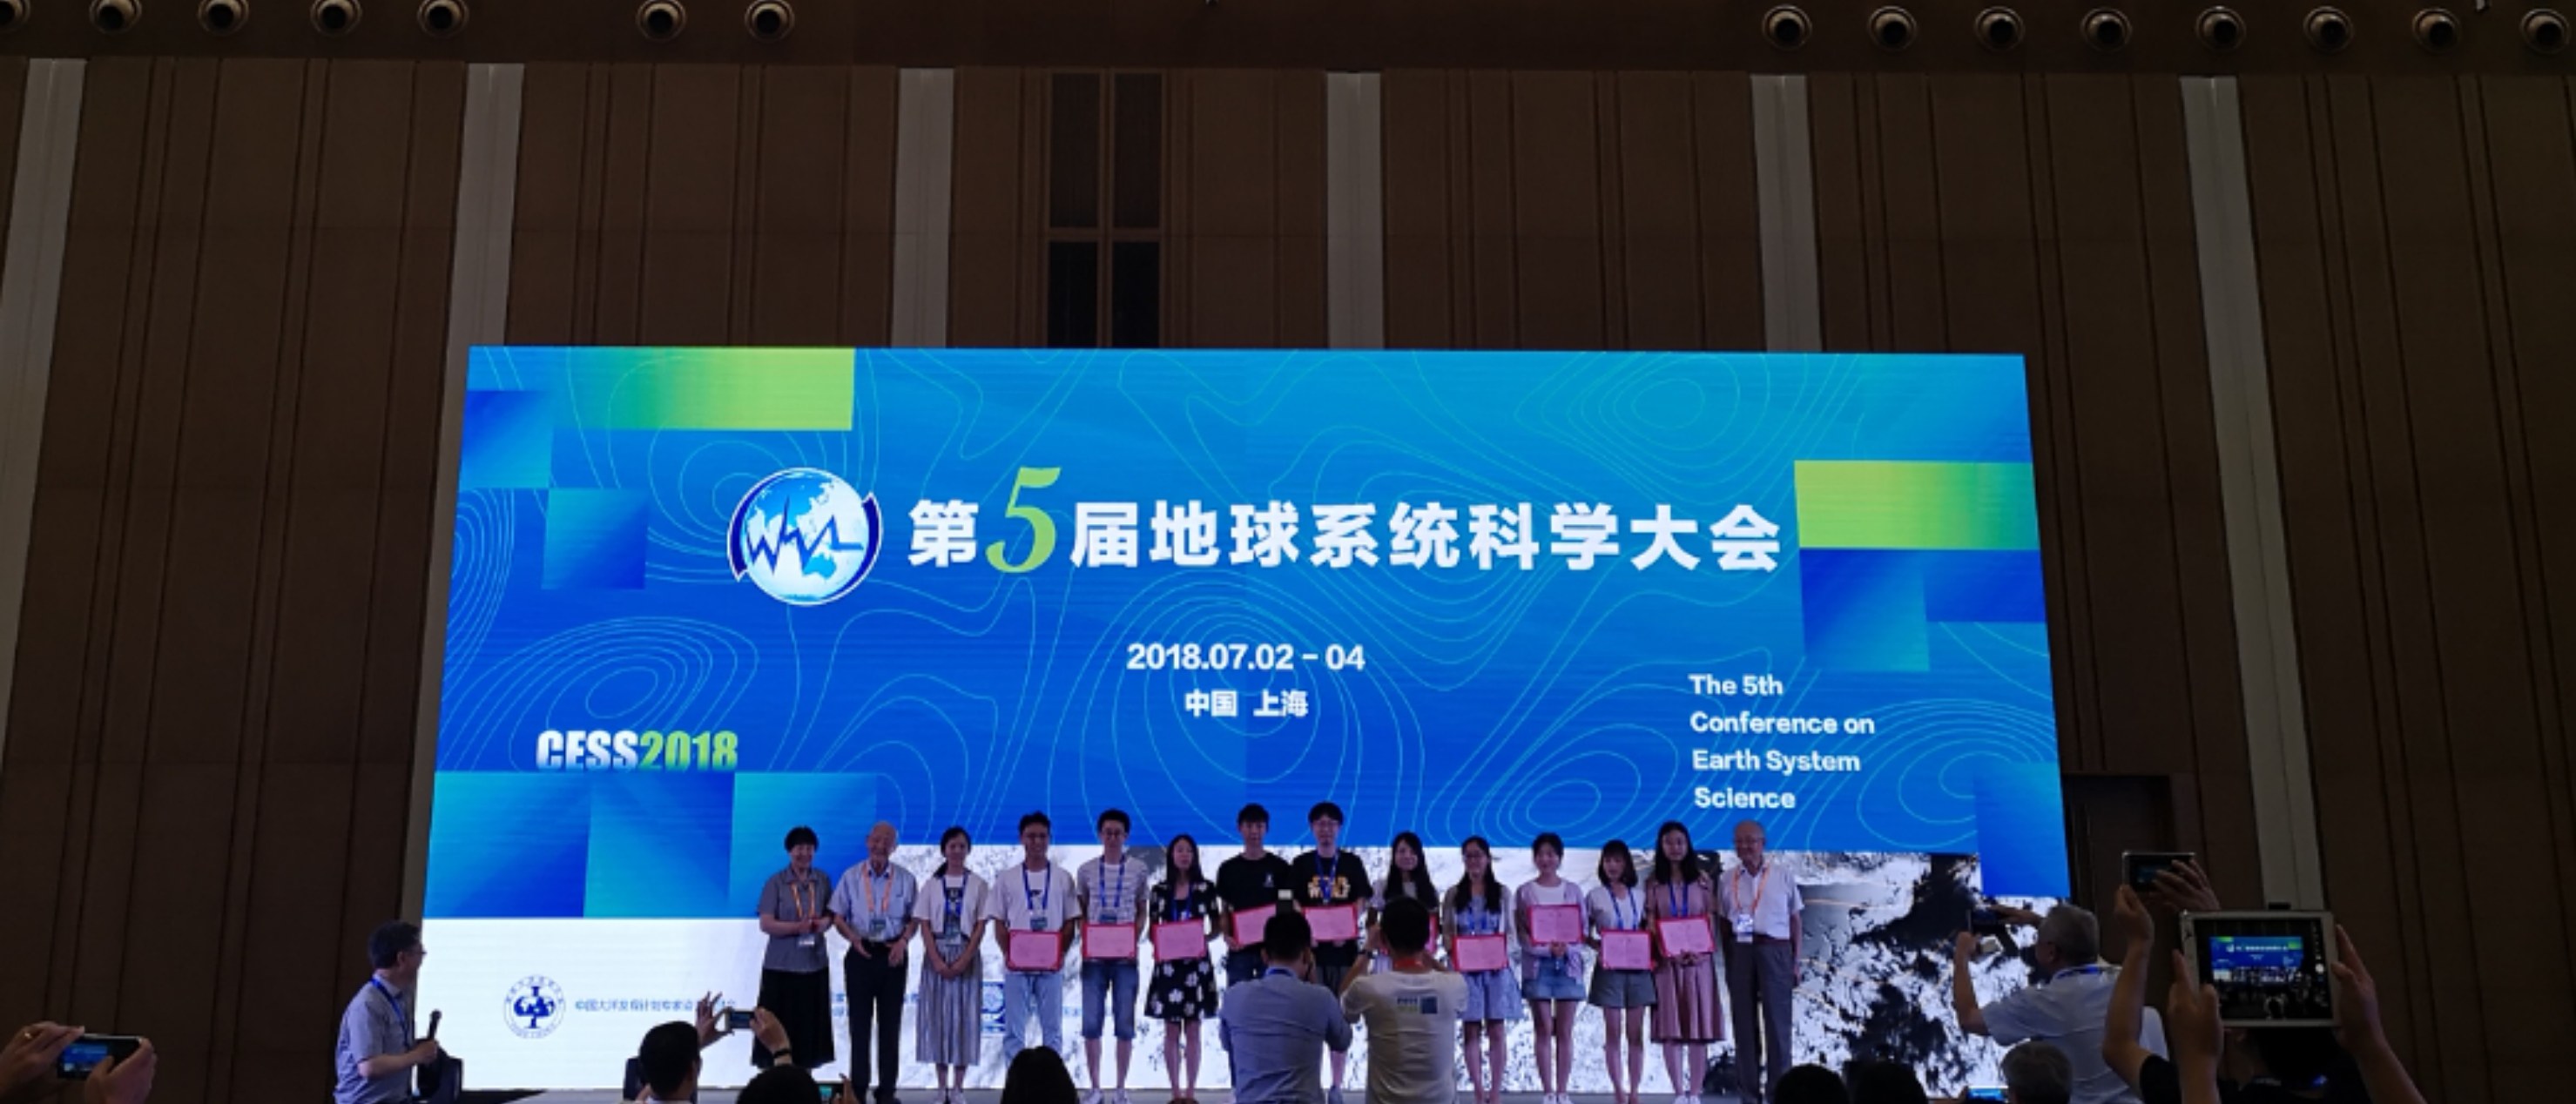 罗怡鸣同学获“第五届地球系统科学大会”优秀学生展板奖